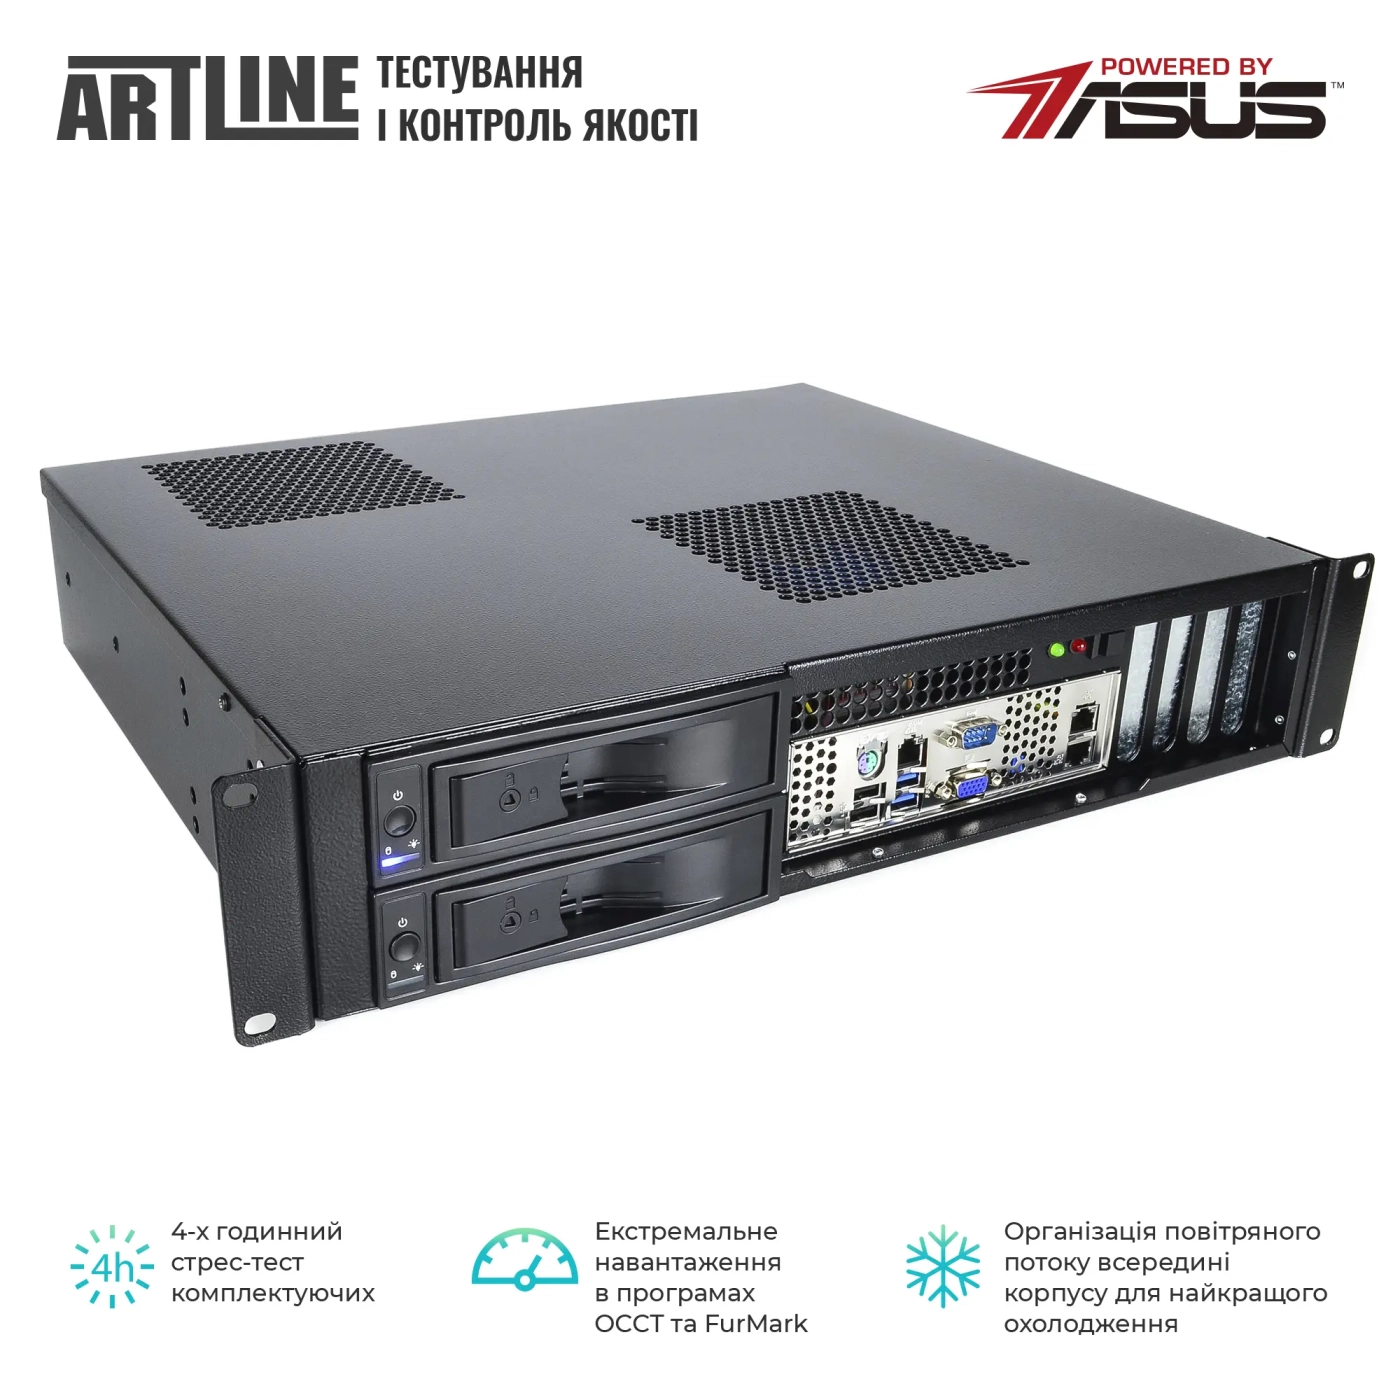 Купить Сервер ARTLINE Business R35 (R35v39) - фото 6